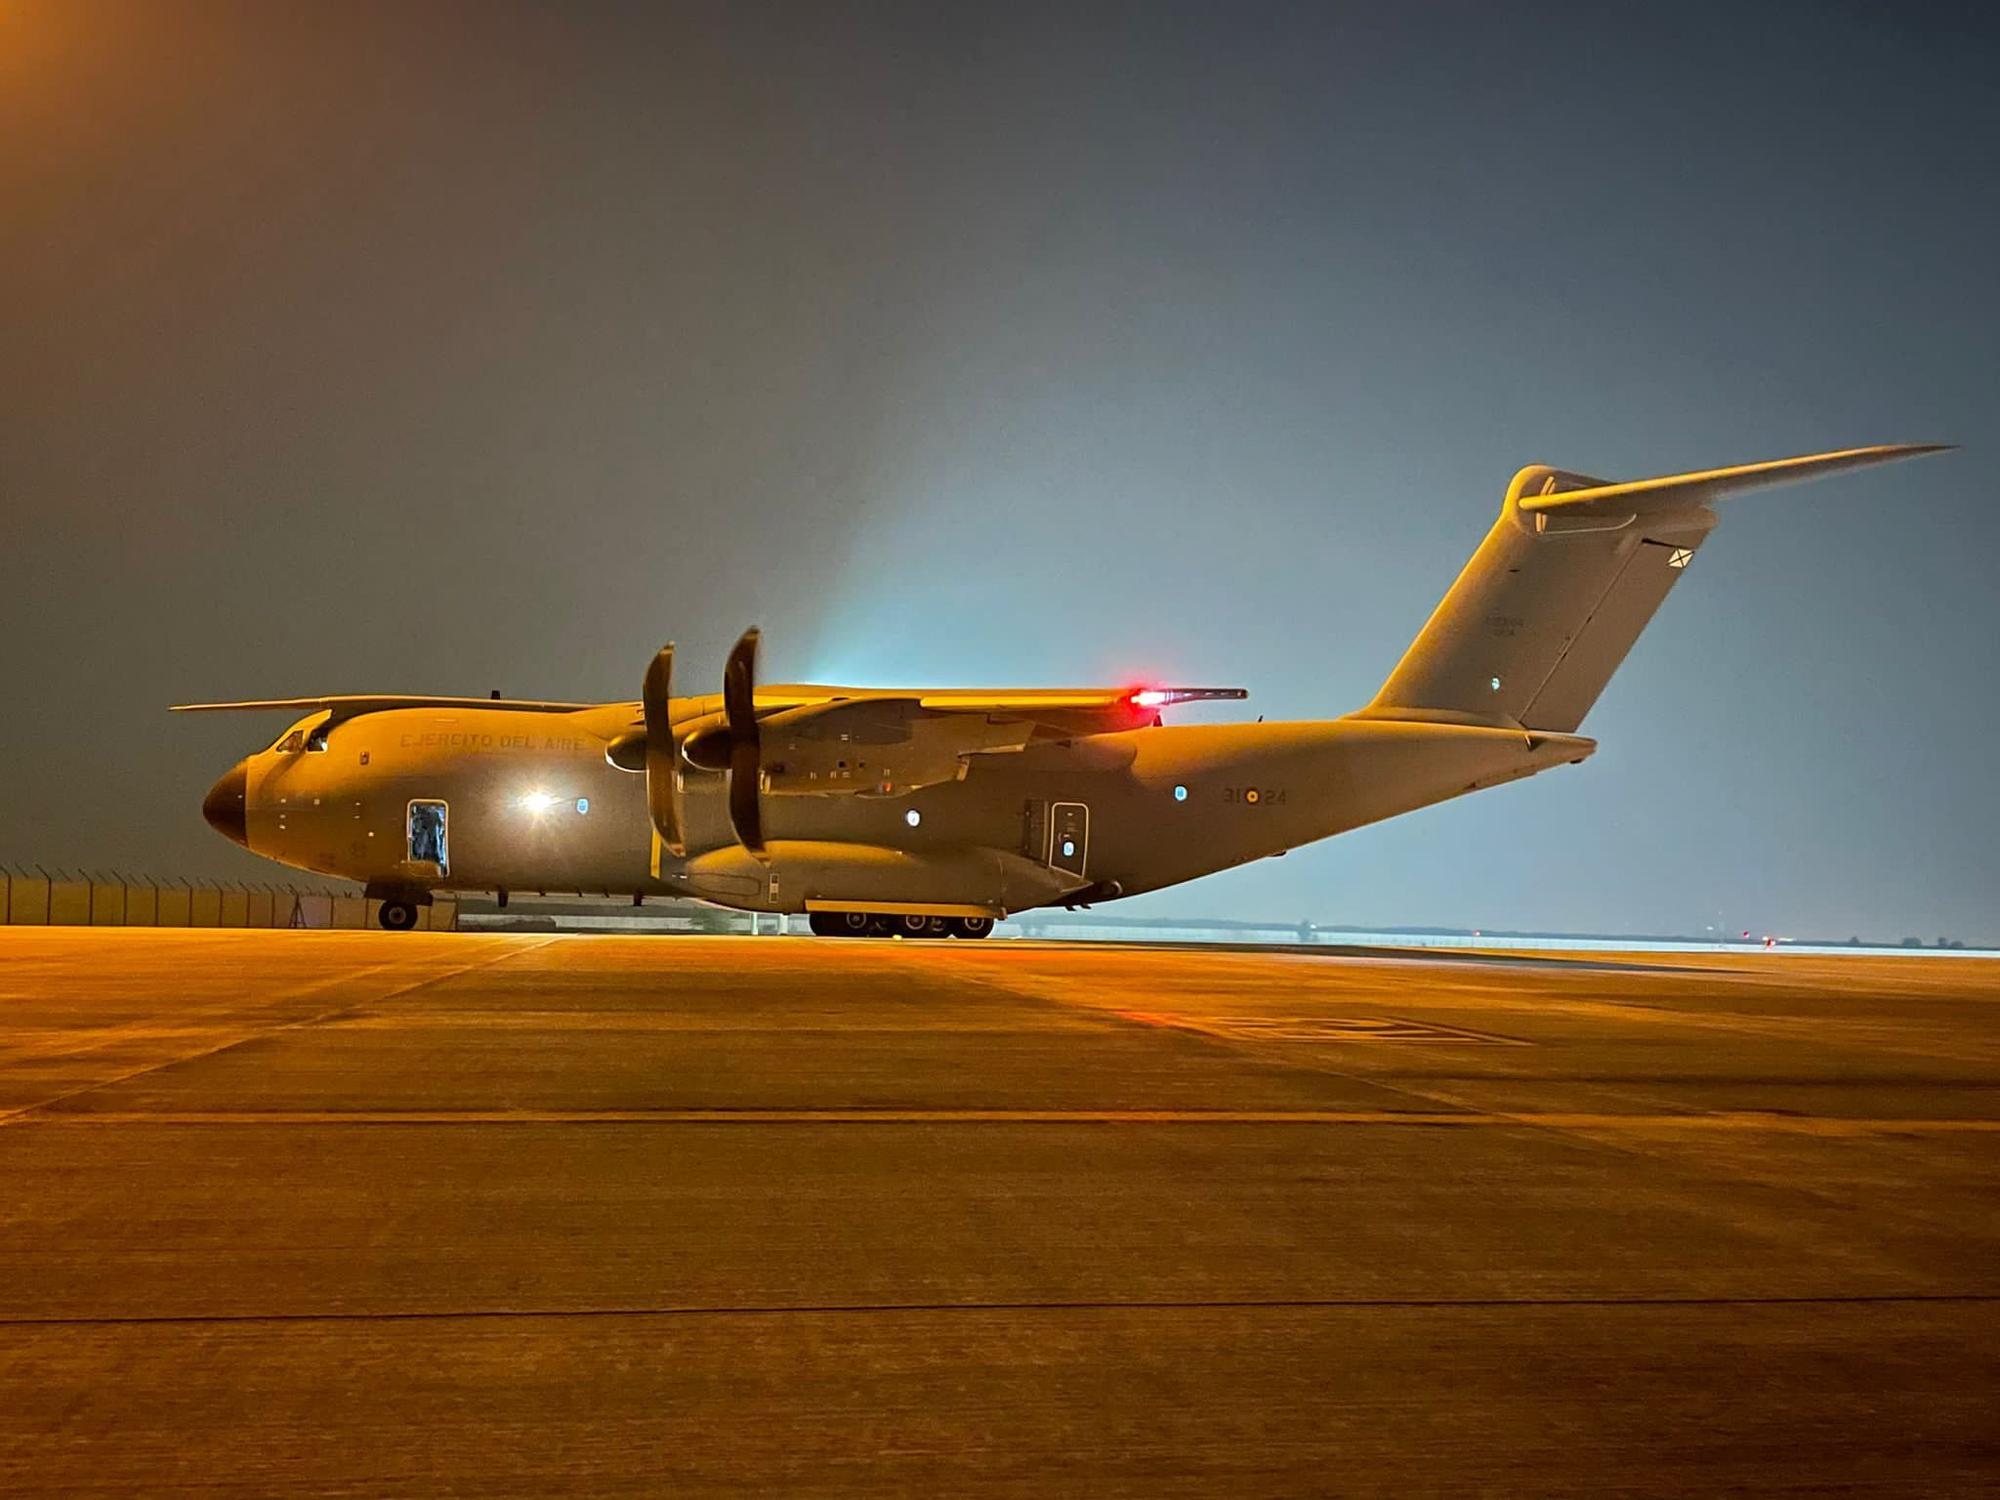 FOTOGALERÍA | La evacuación de Afganistán desde los ojos de Roberto Moya y Javier Ferrer, dos militares de la Base Aérea de Zaragoza